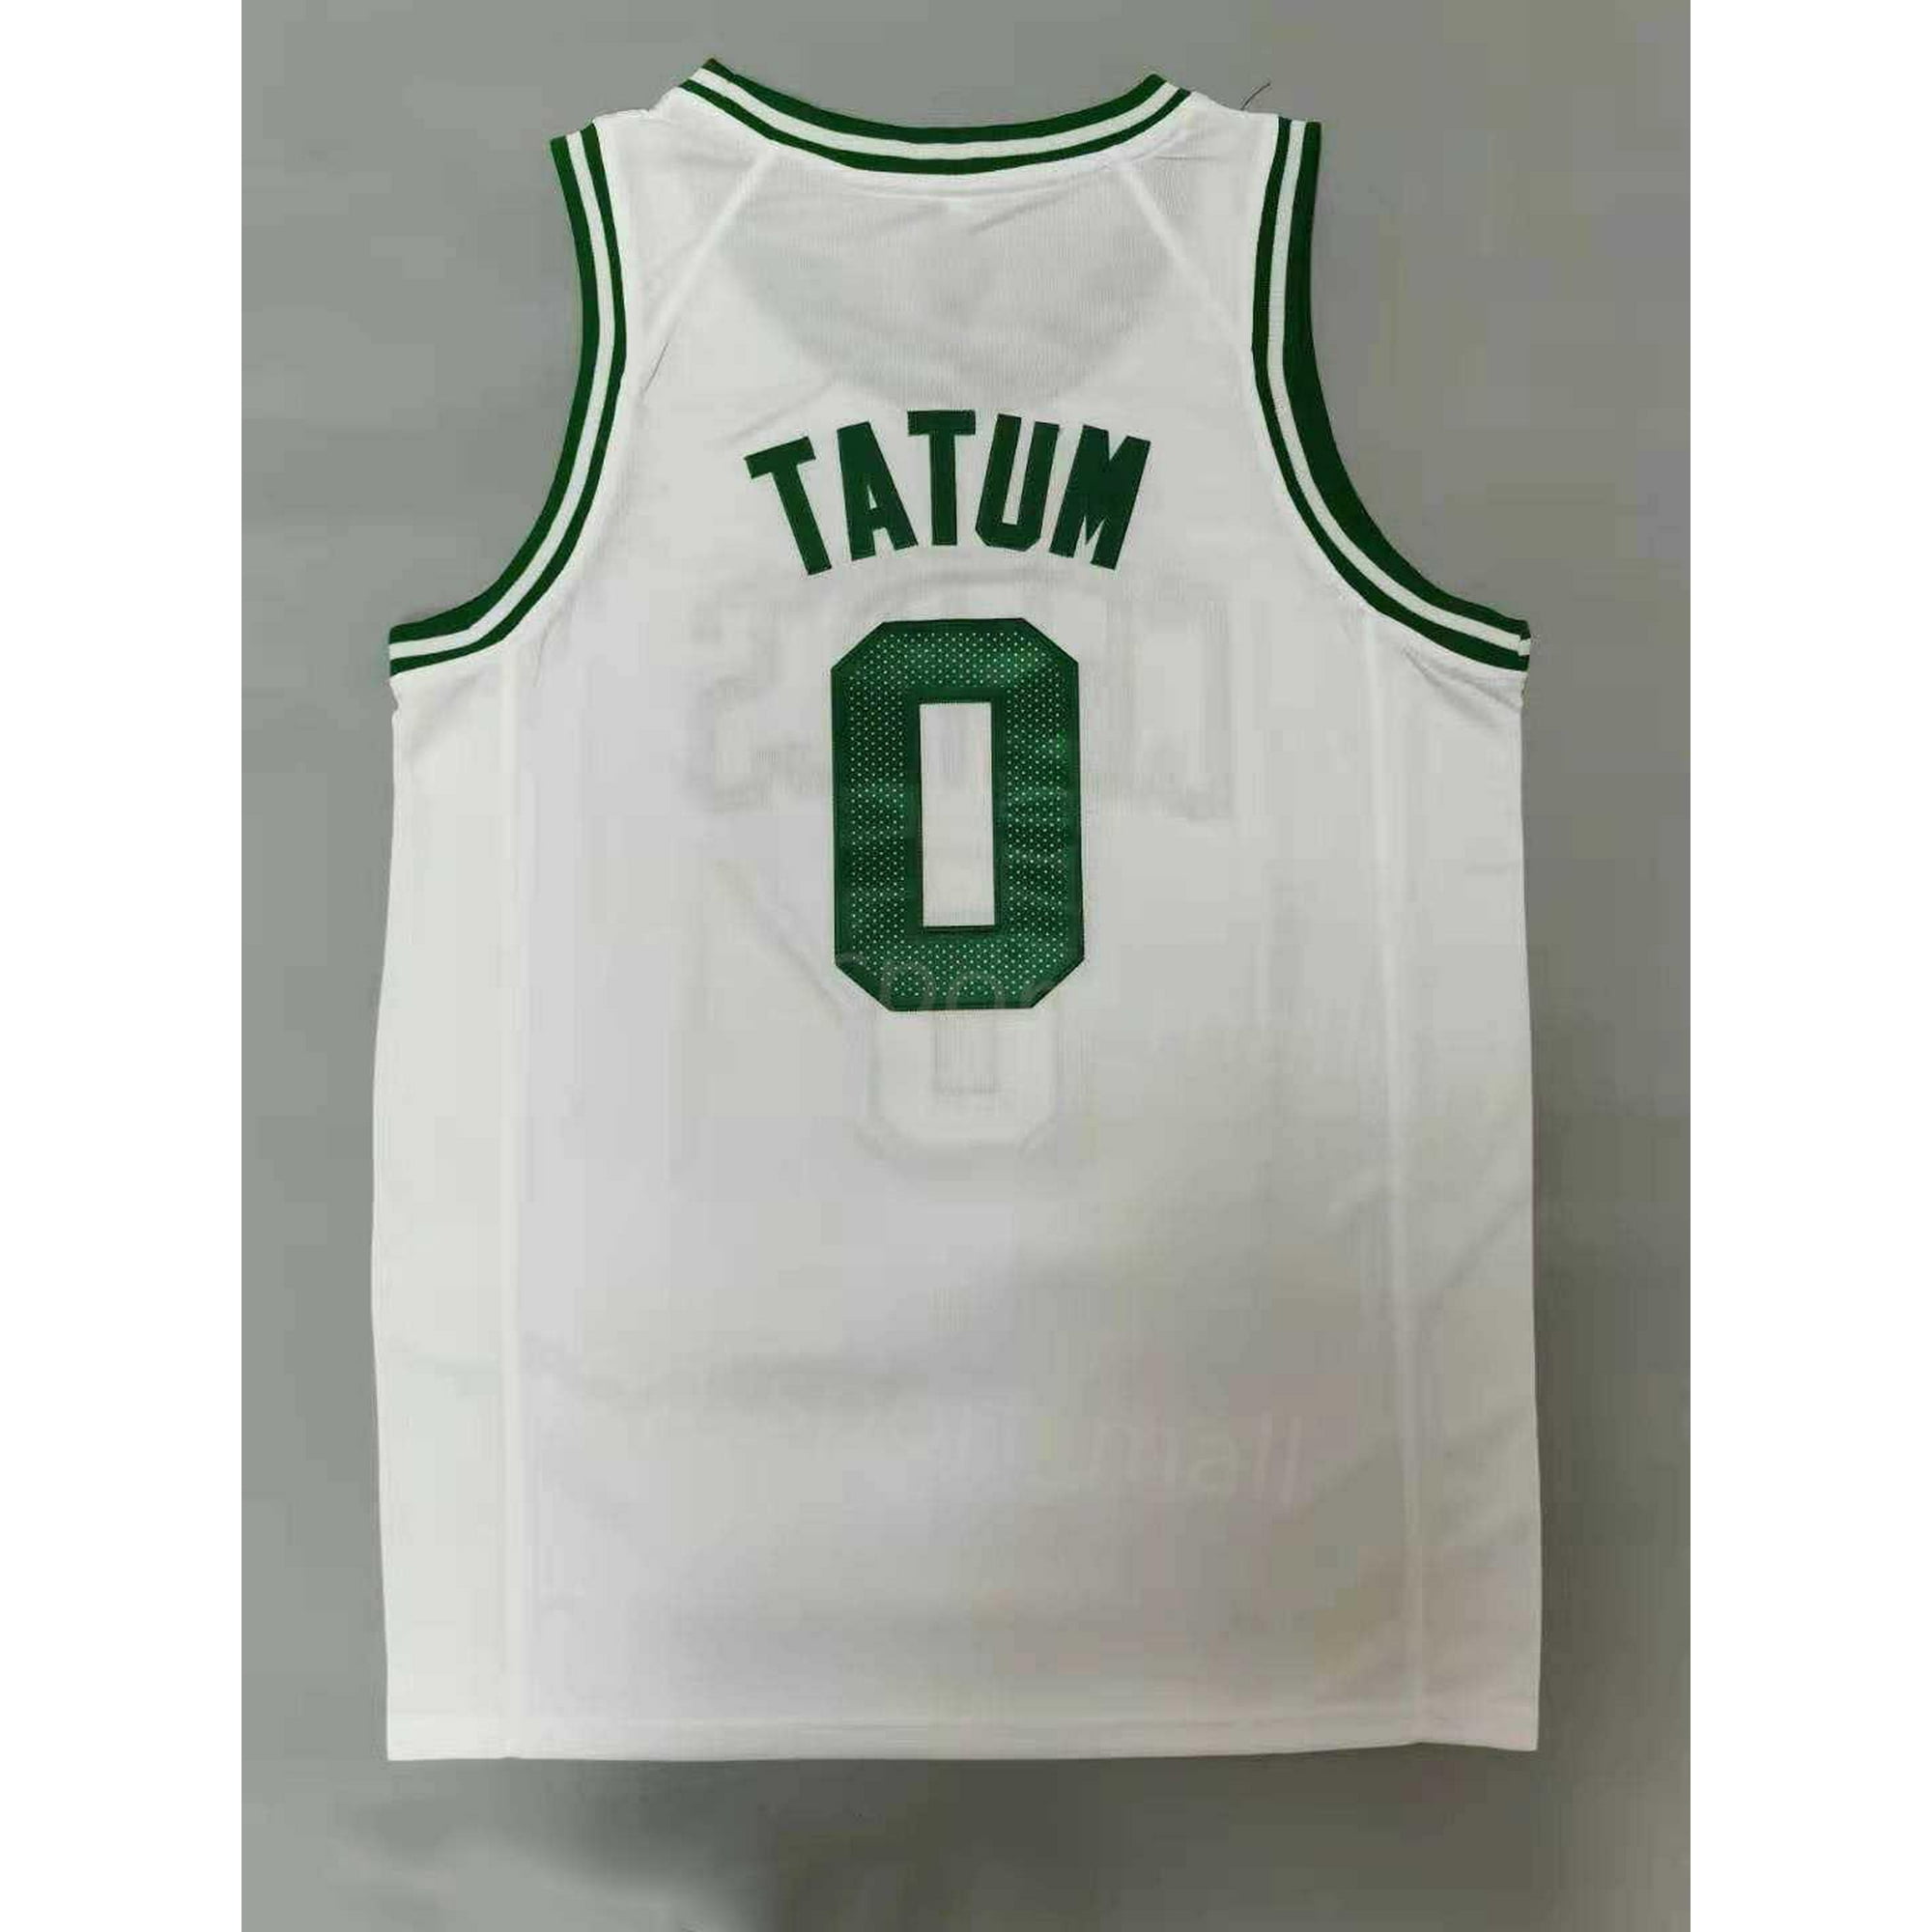 NBA_ jersey The Finals Men Basketball Jayson Tatum Jersey 0 Jaylen